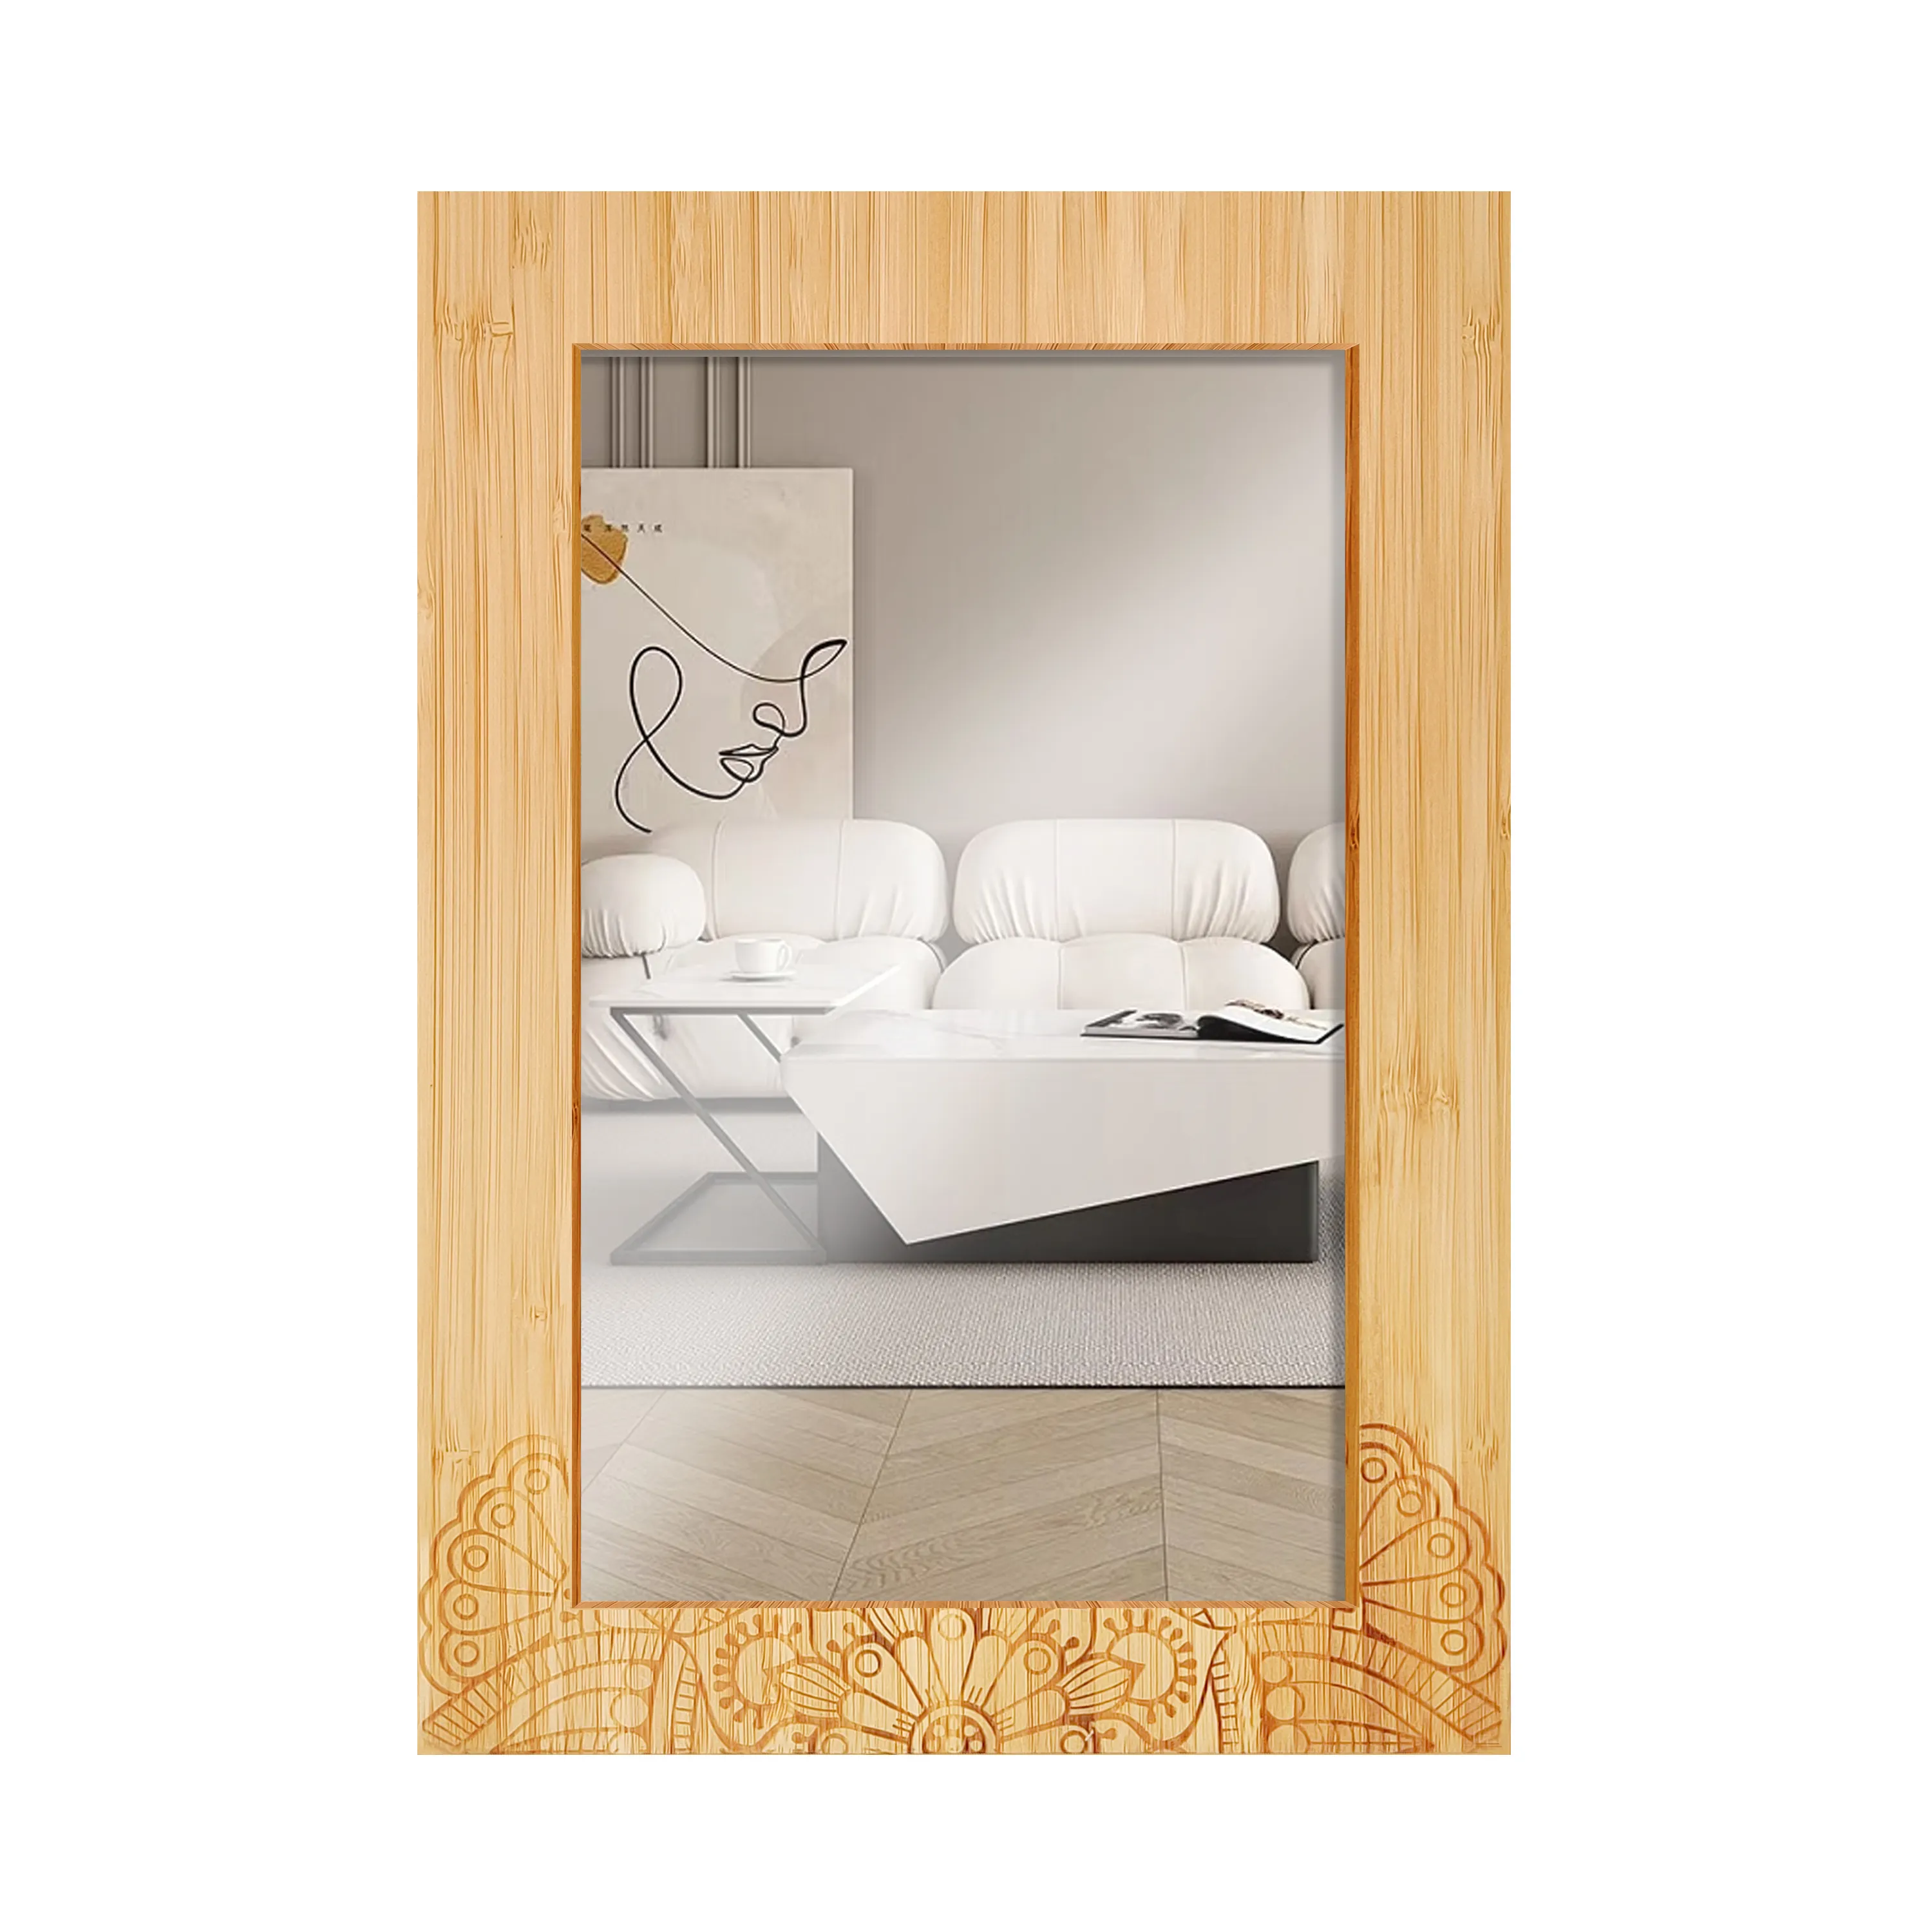 YCZM personalizado decoración del hogar cuadro enmarcado para pared de fondo dormitorio Pared de mesa marco de fotos de madera de Bambú